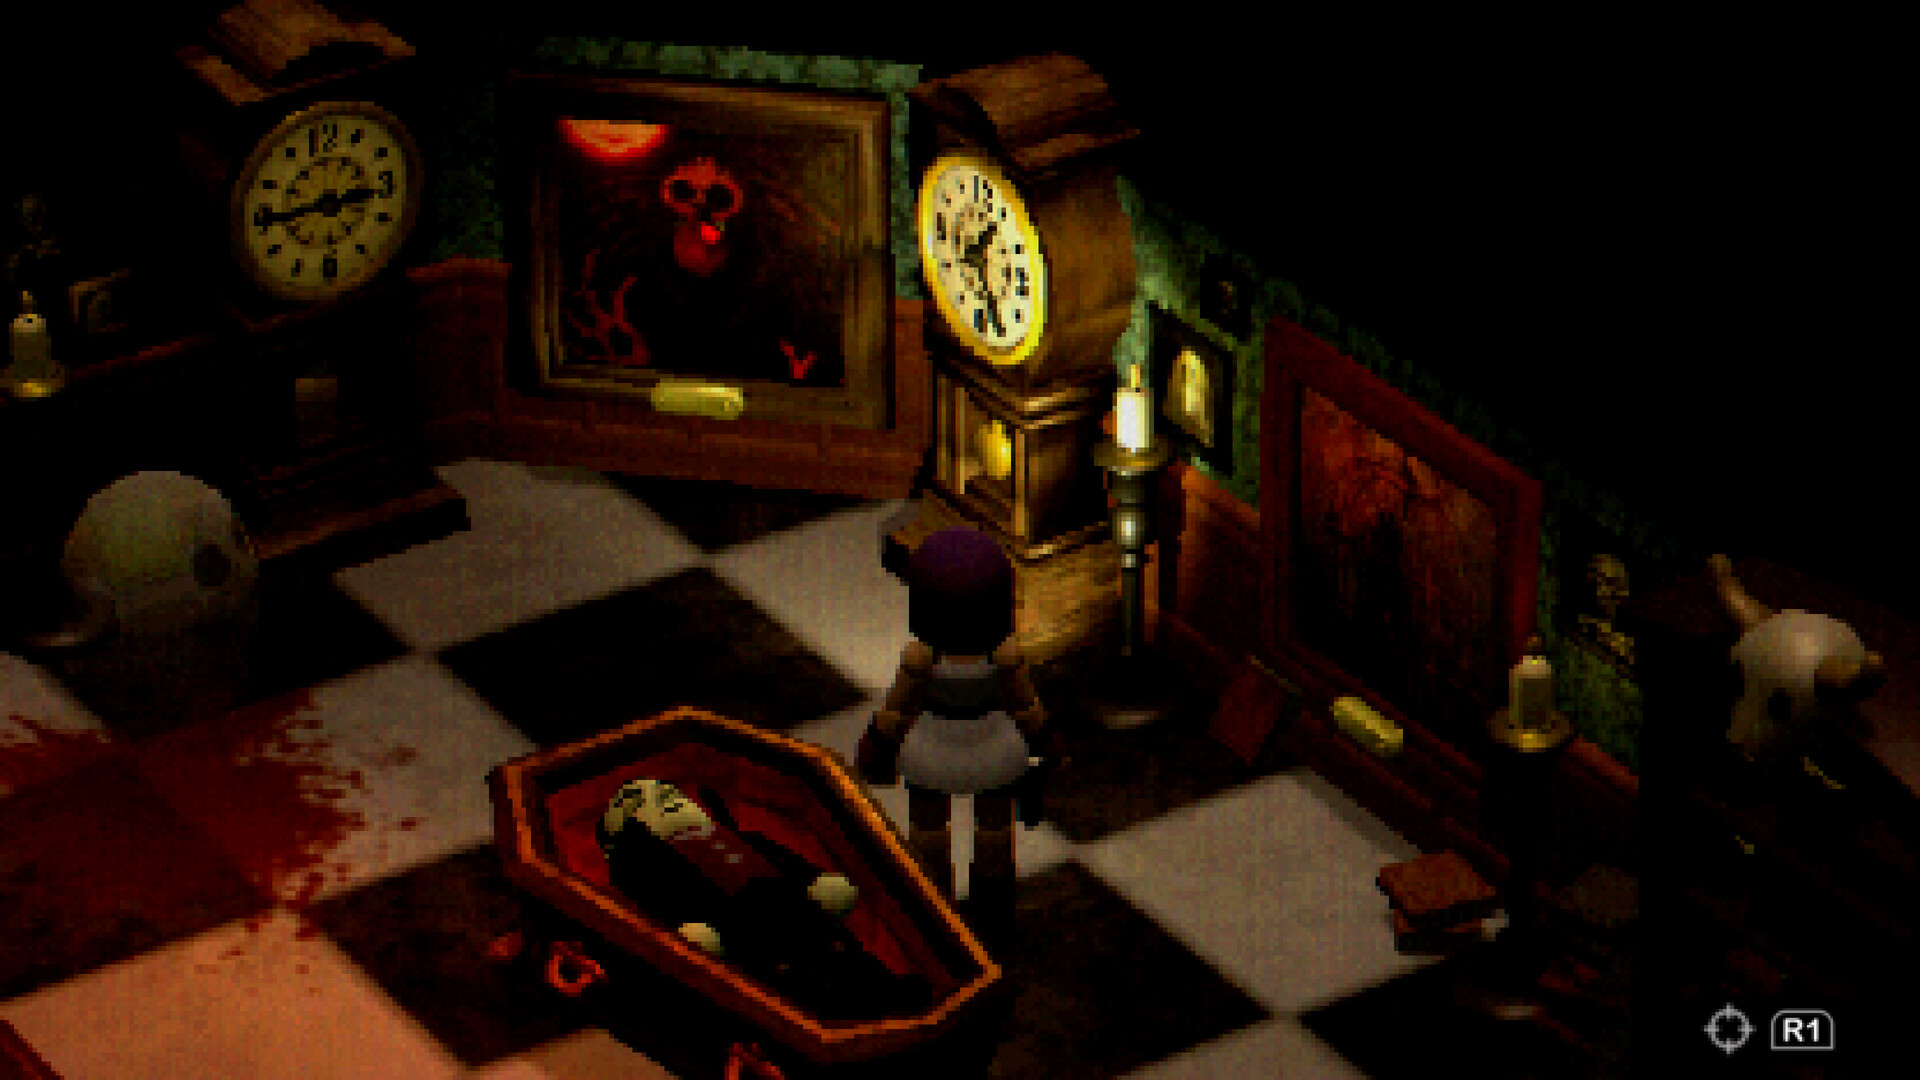 Eine klotzige Figur steht in einem Raum mit einem Sarg in der Mitte auf schwarzen und weißen Fliesen, neben einer großen Standuhr